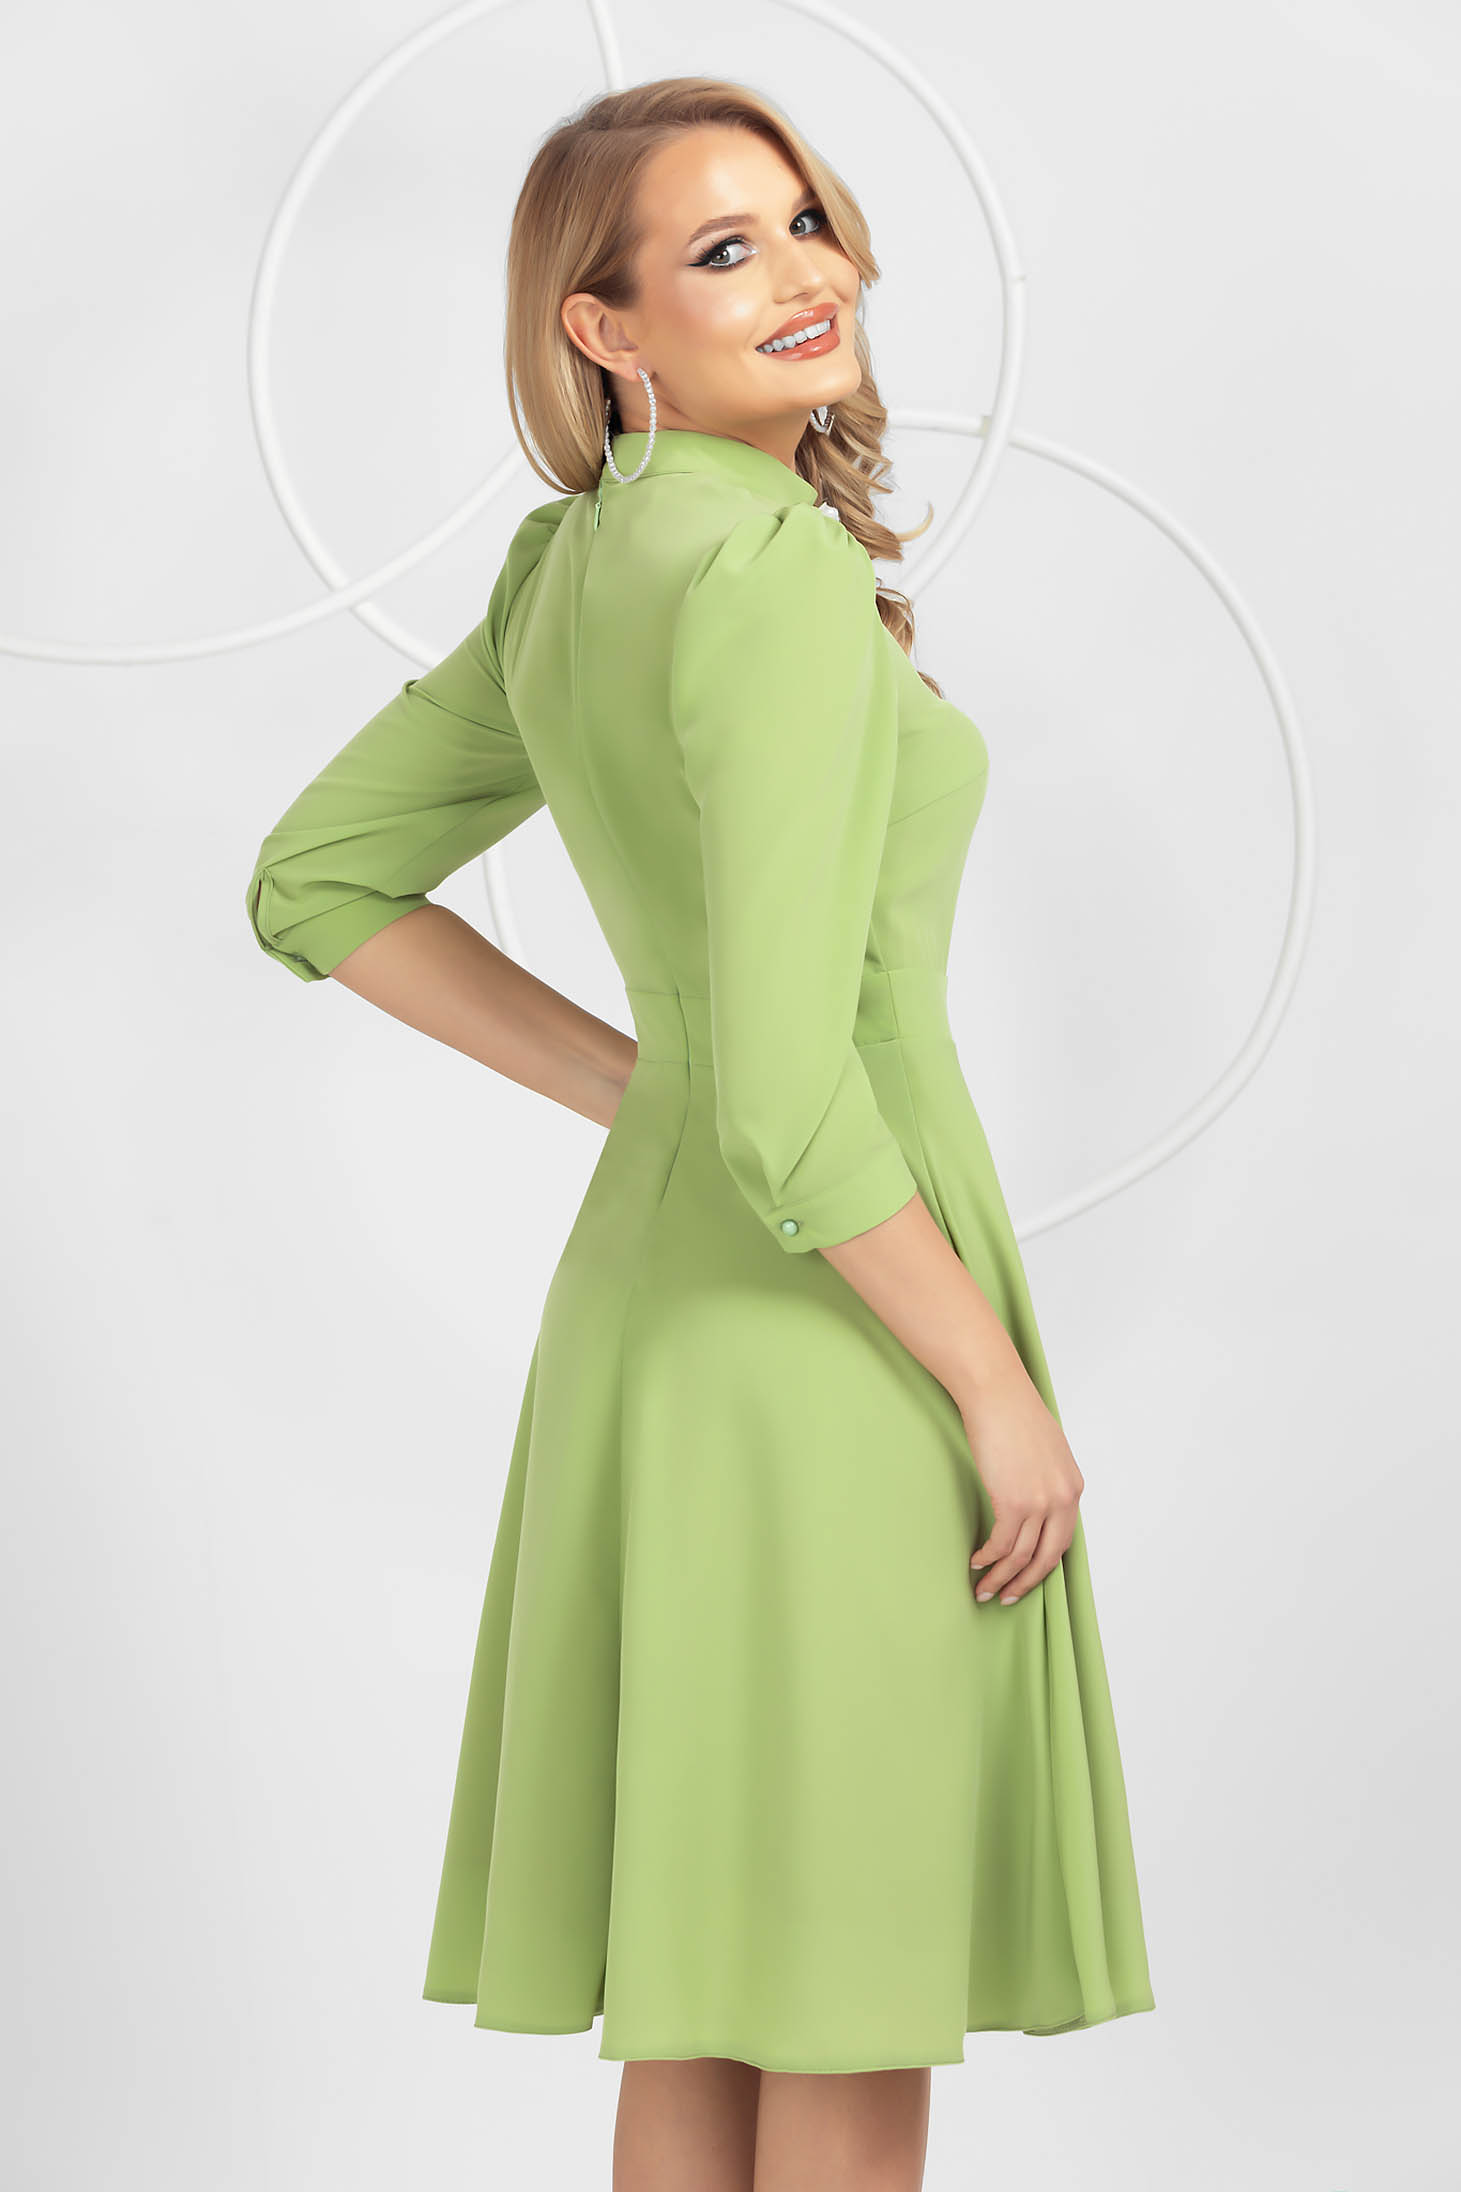 Világos zöld harang ruha muszlinból bross kiegészítővel 3 - StarShinerS.hu